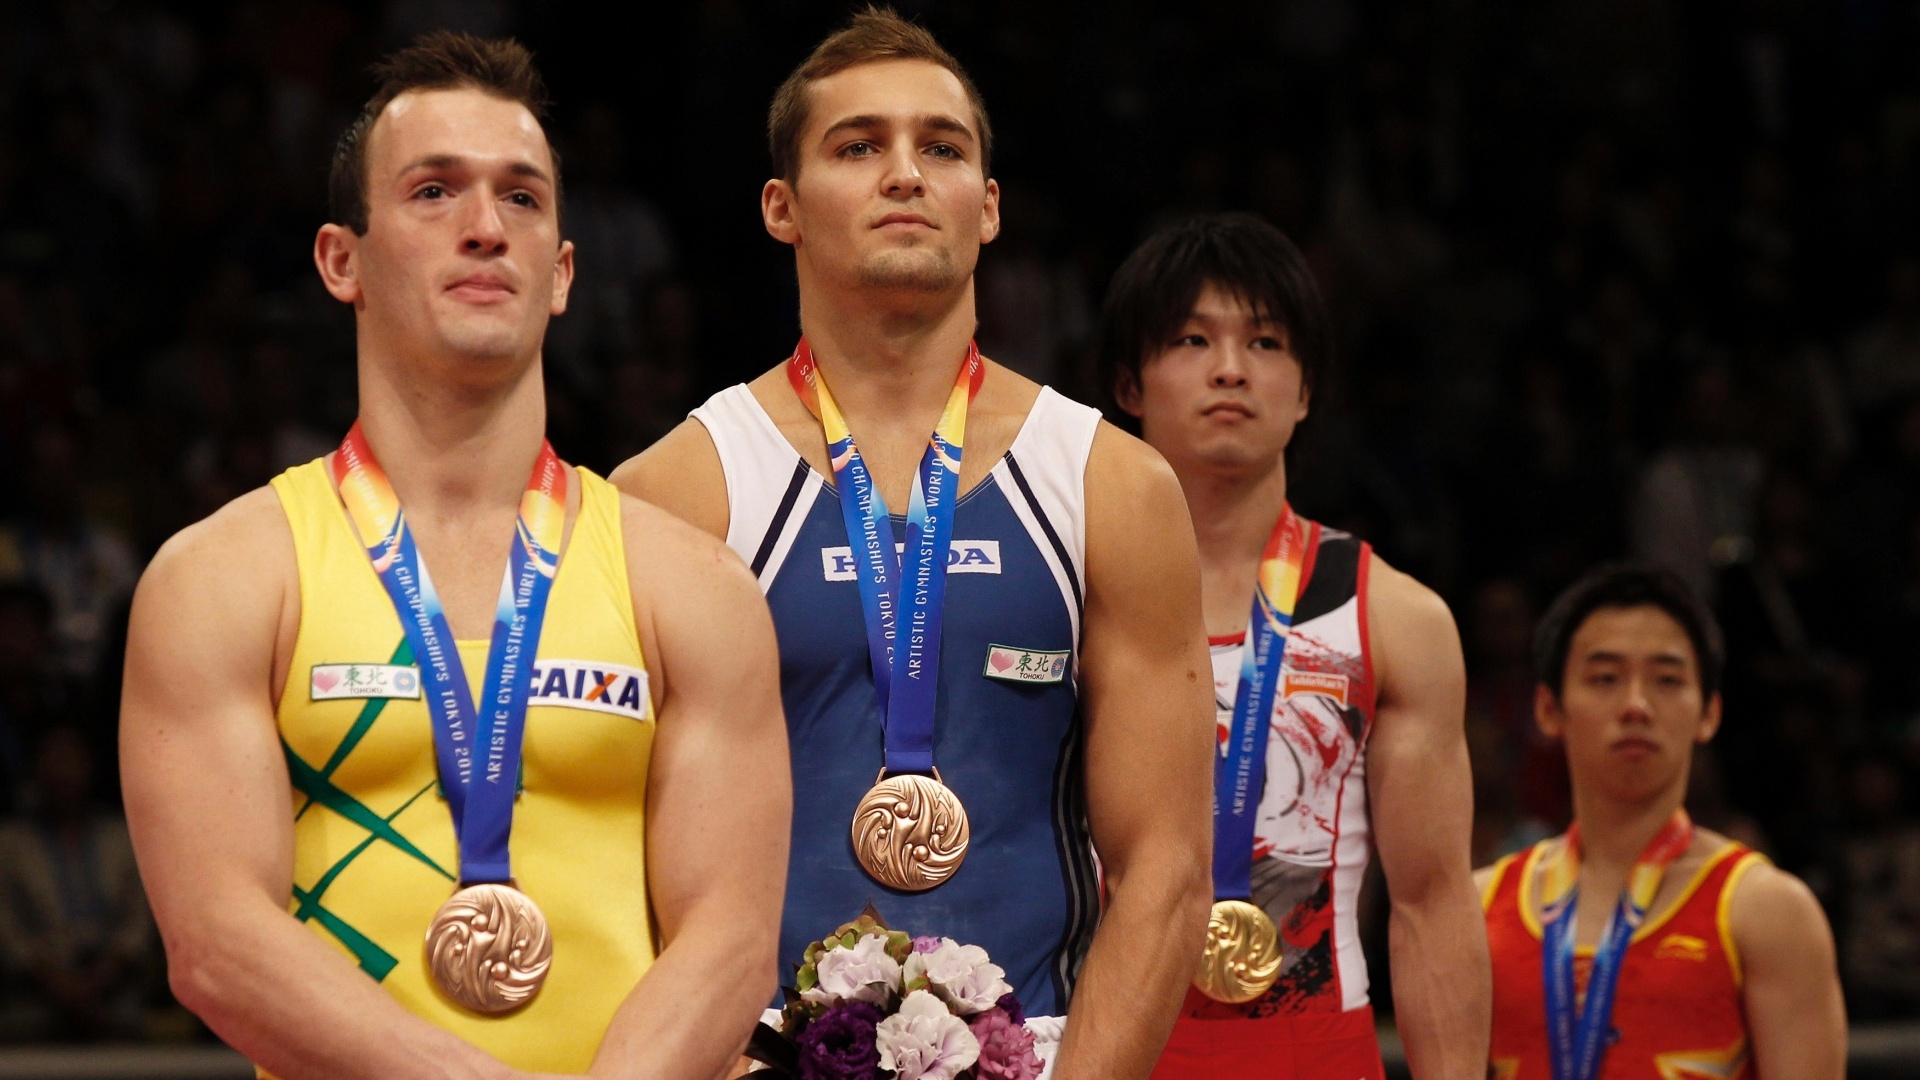 No pódio, Diego Hypolito recebeu a medalha de bronze no solo no Mundial de Ginástica em Tóquio (15/10/2011)